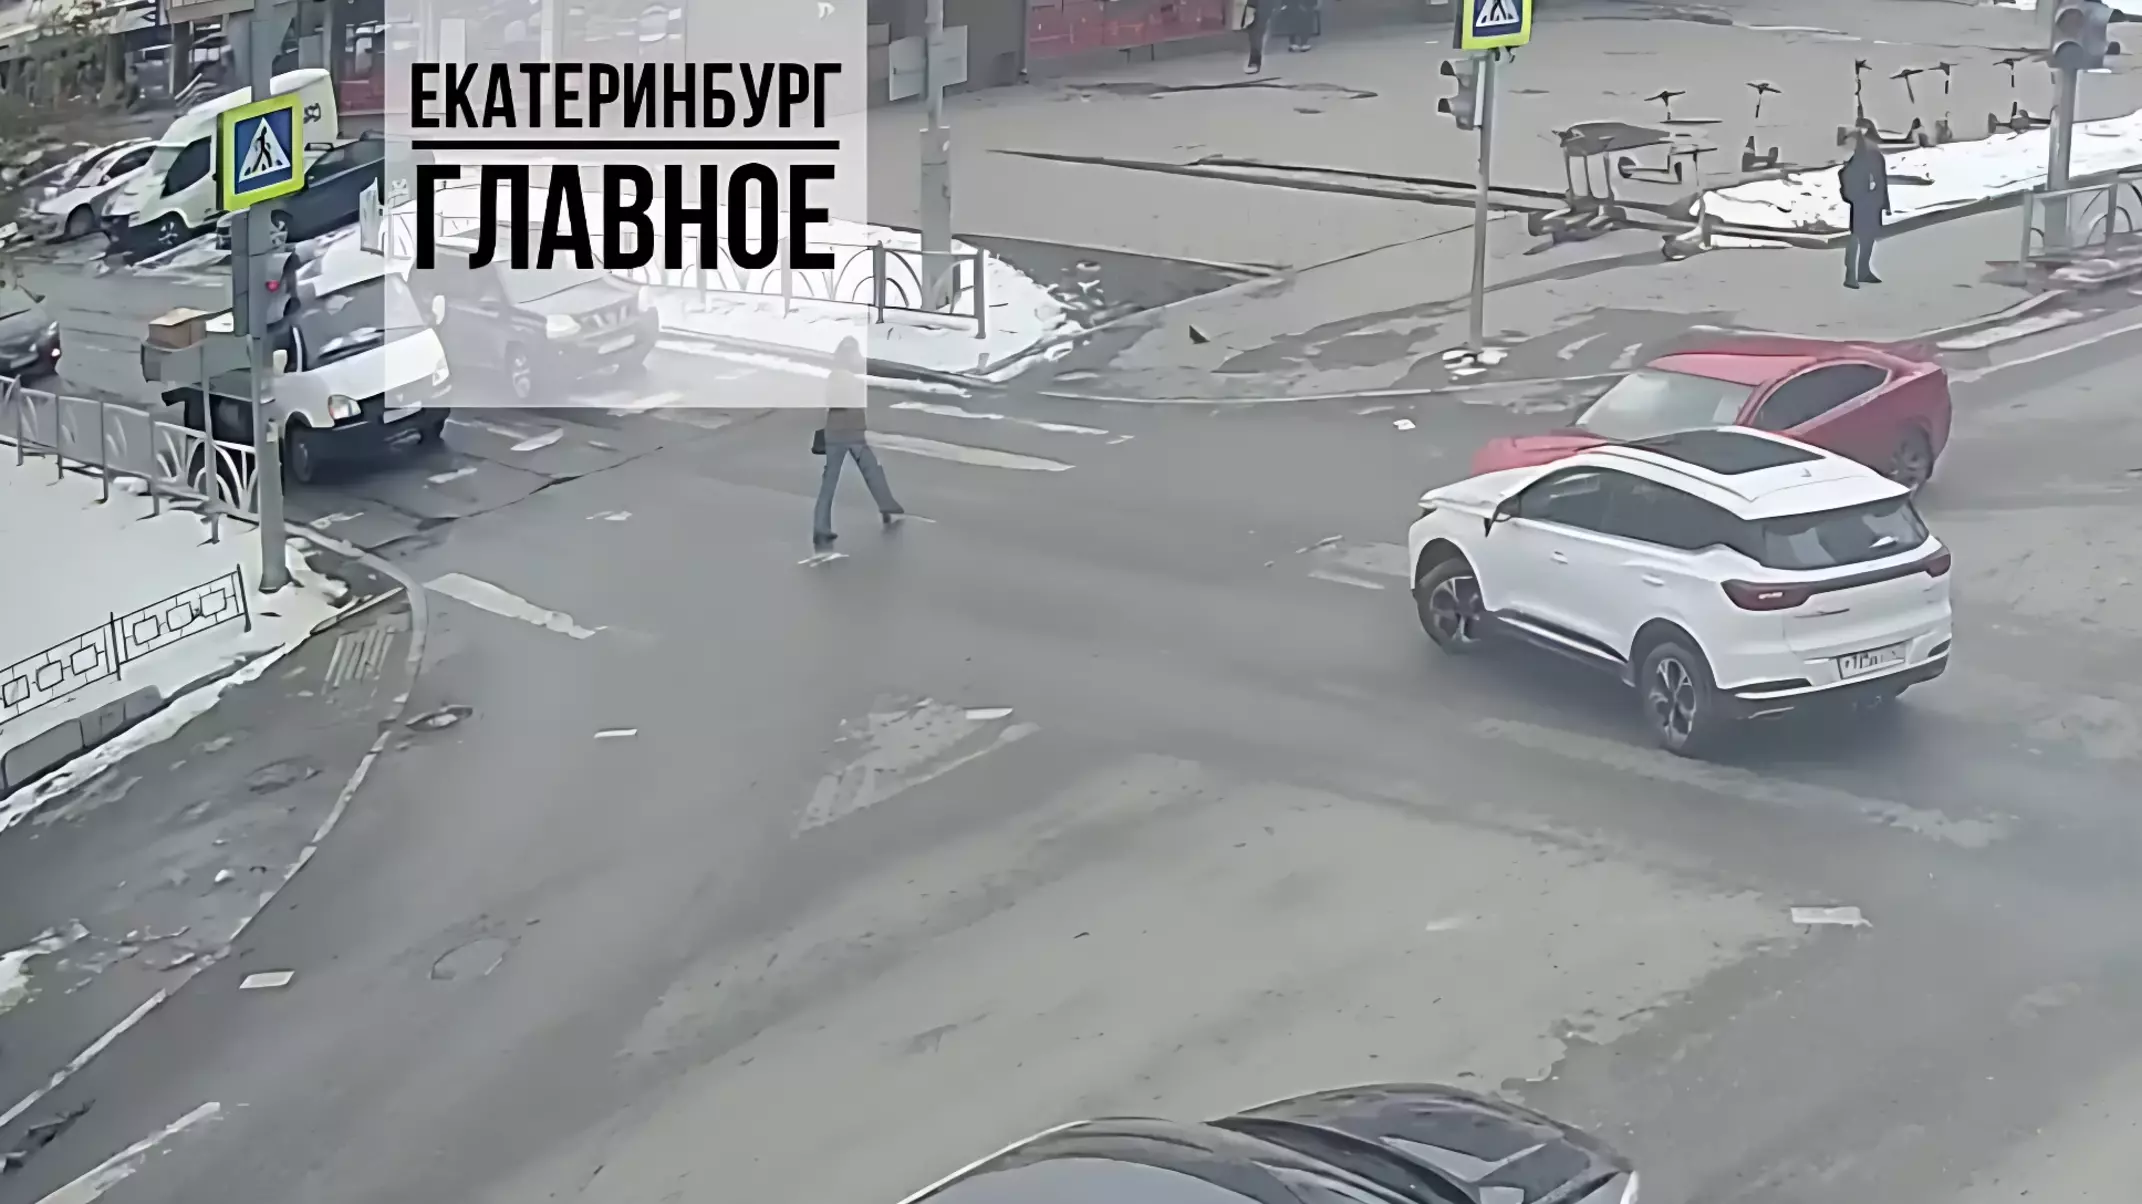 Иномарка столкнулась с автомобилем в Екатеринбурге и влетела в столб